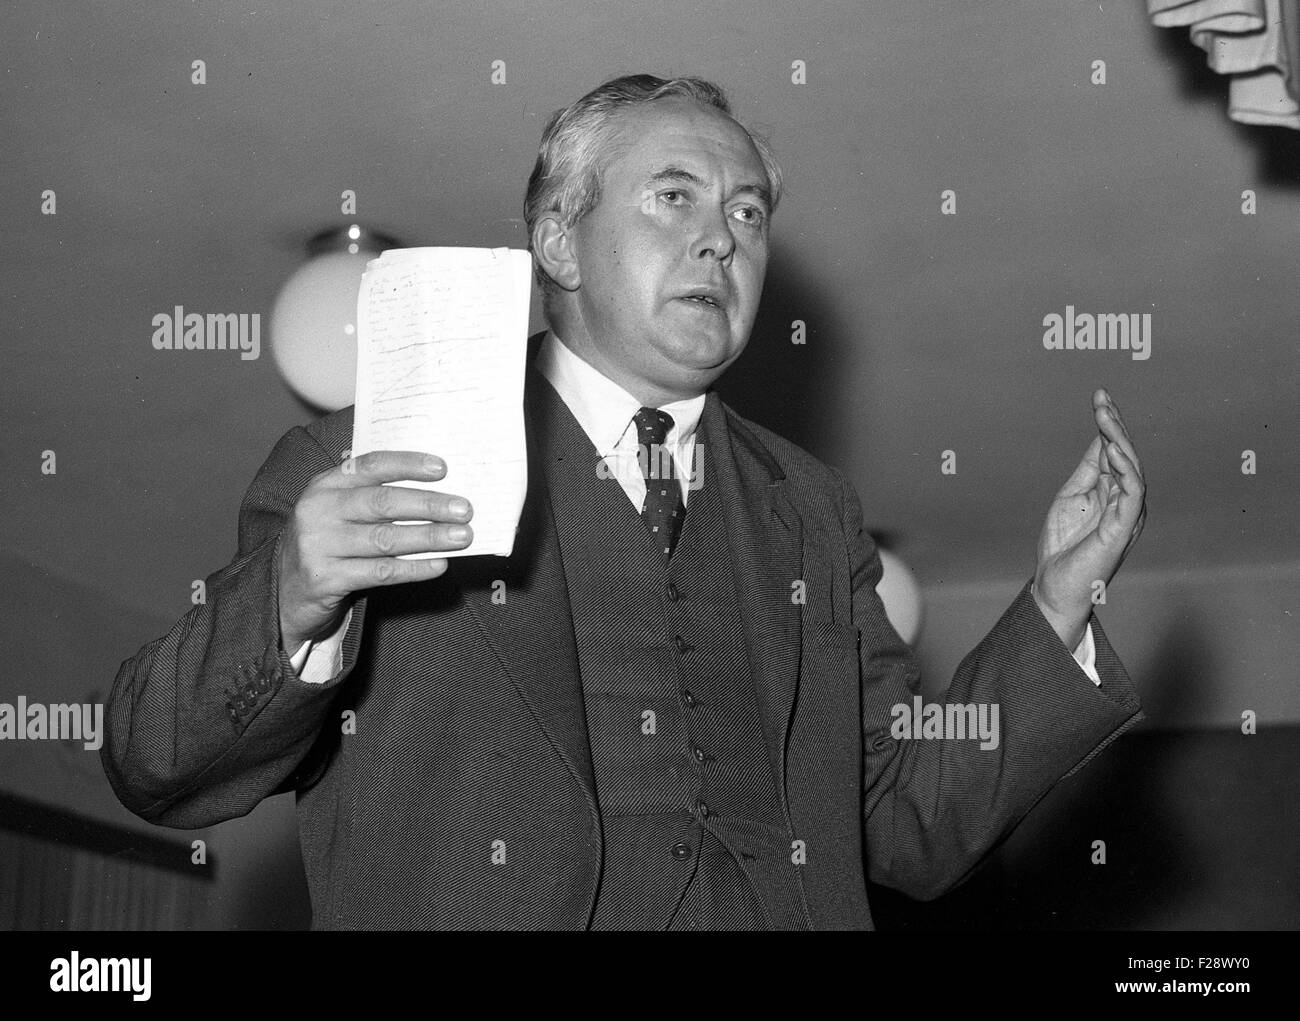 El político británico Harold Wilson habla en la región de West Midlands 27/10/1957 Foto de stock